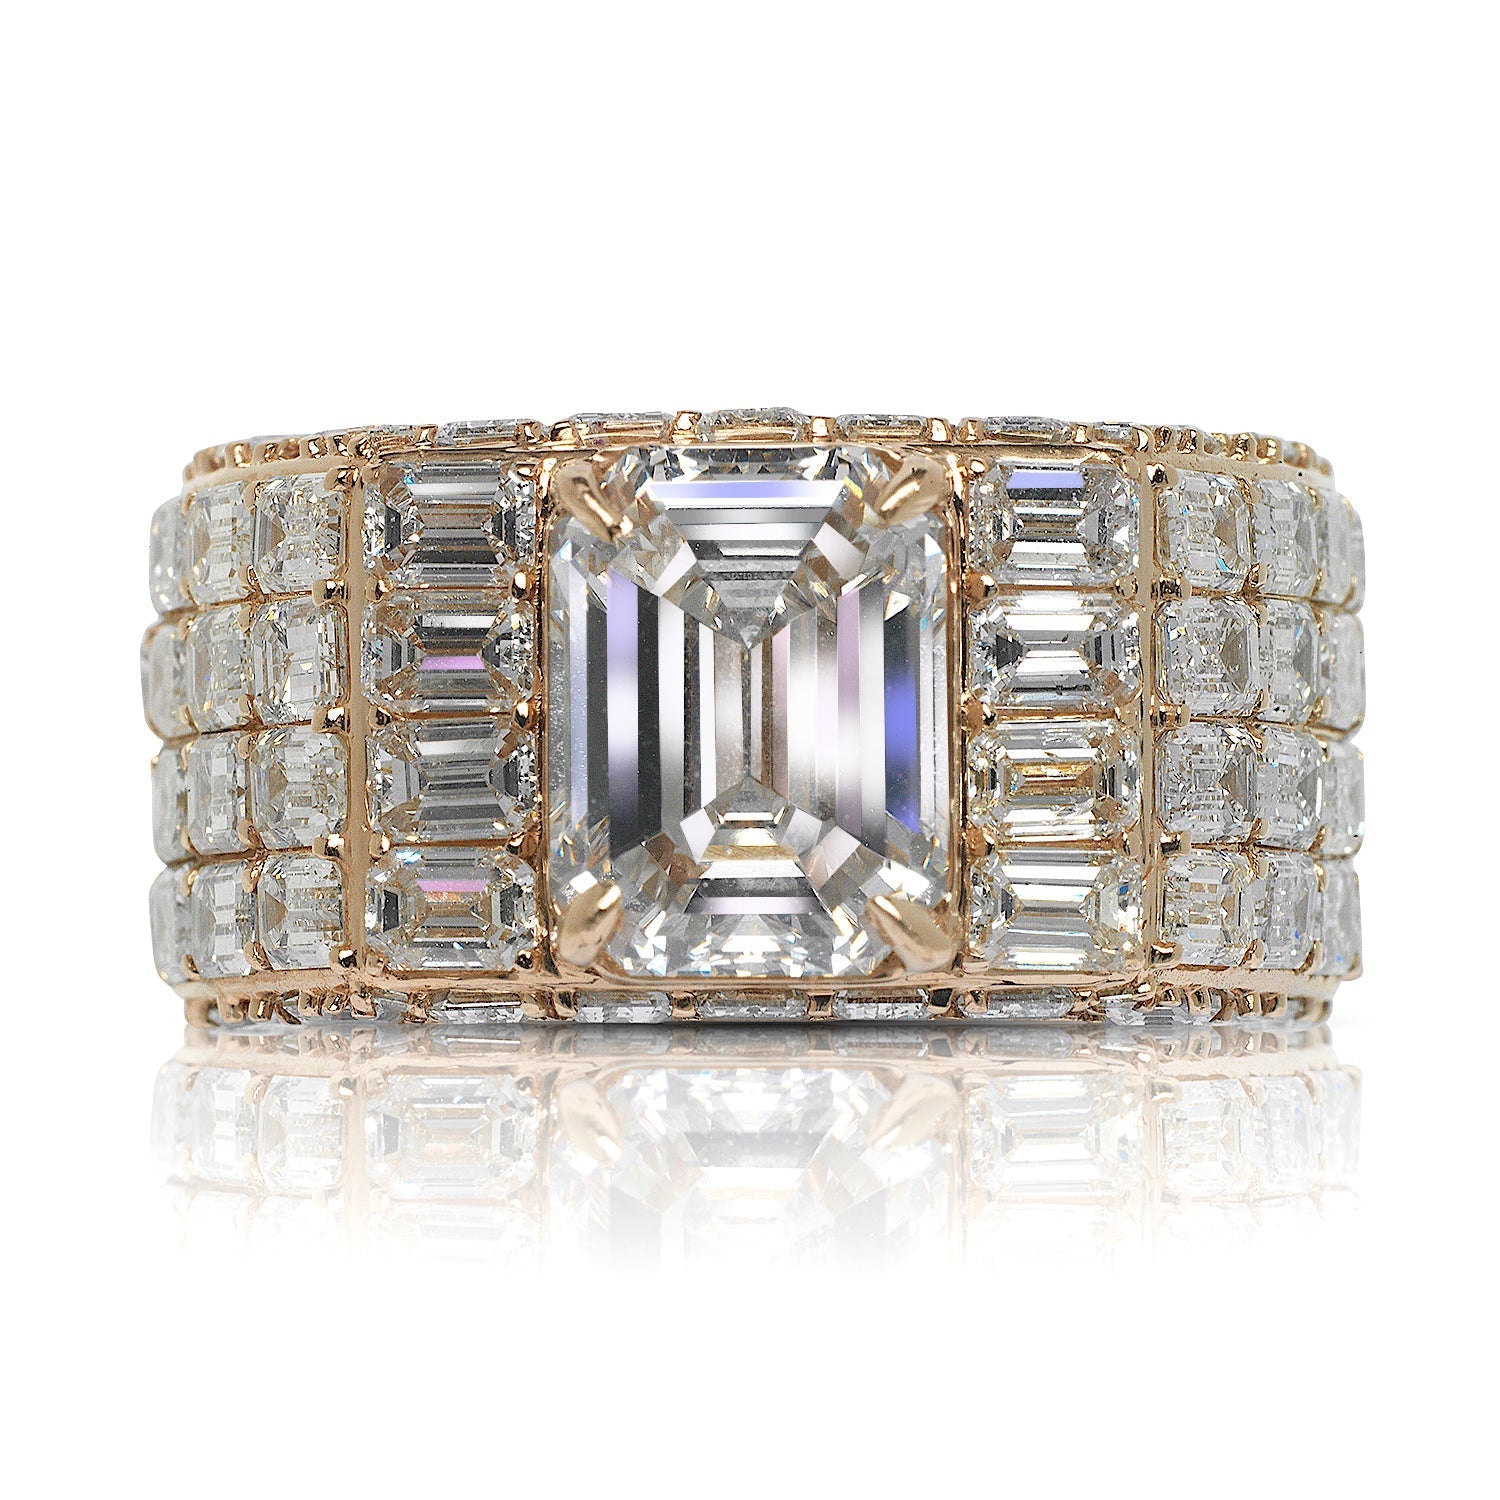 Buy Two-toned Diamond Men's Ring Online | ORRA